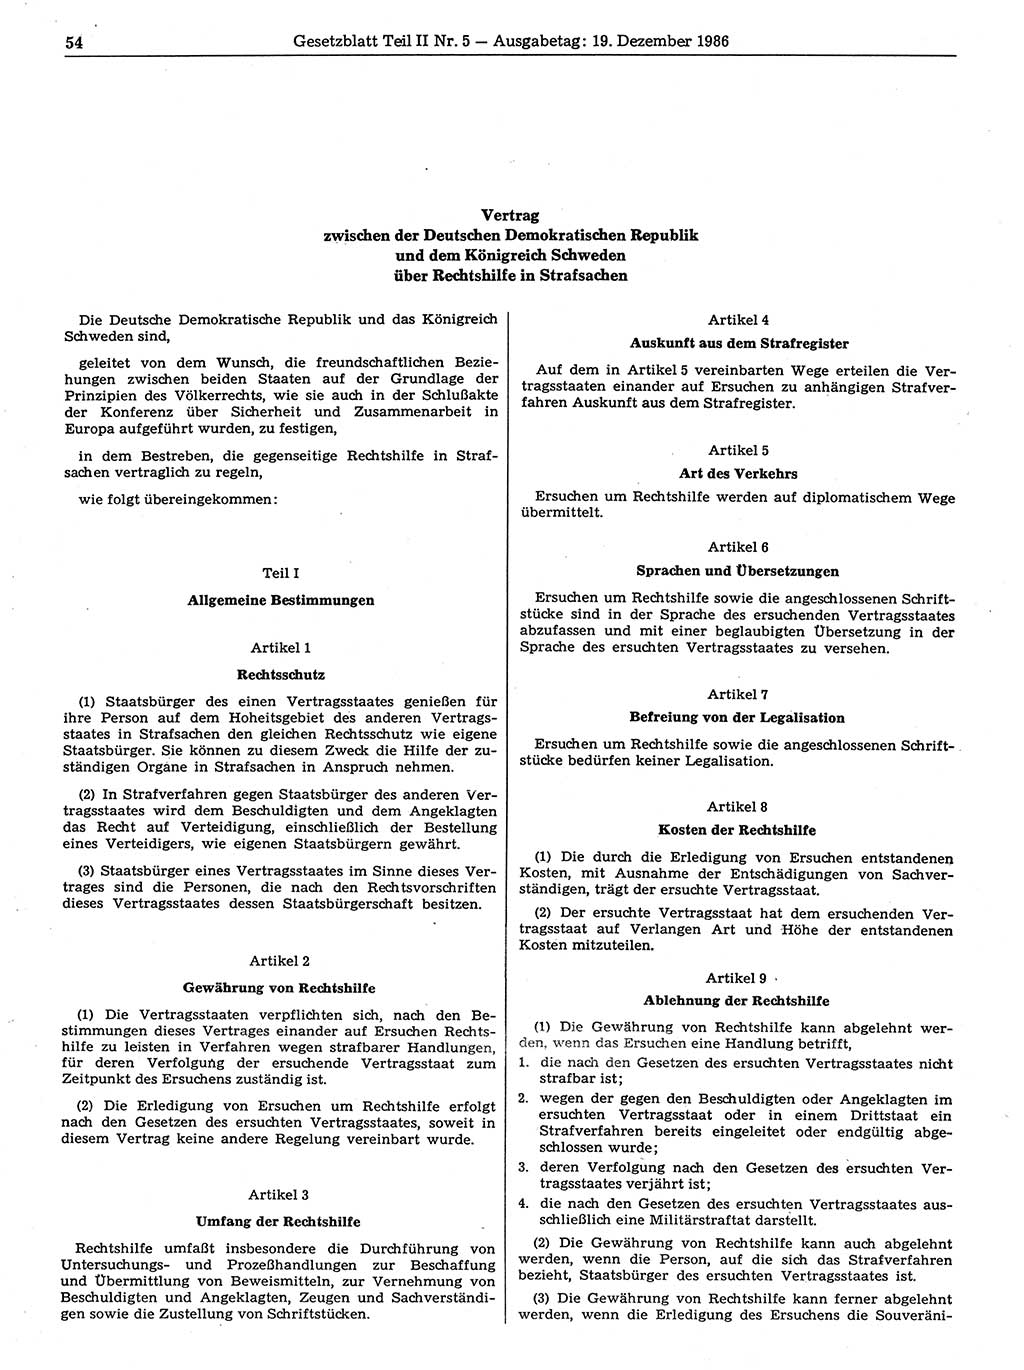 Gesetzblatt (GBl.) der Deutschen Demokratischen Republik (DDR) Teil ⅠⅠ 1986, Seite 54 (GBl. DDR ⅠⅠ 1986, S. 54)